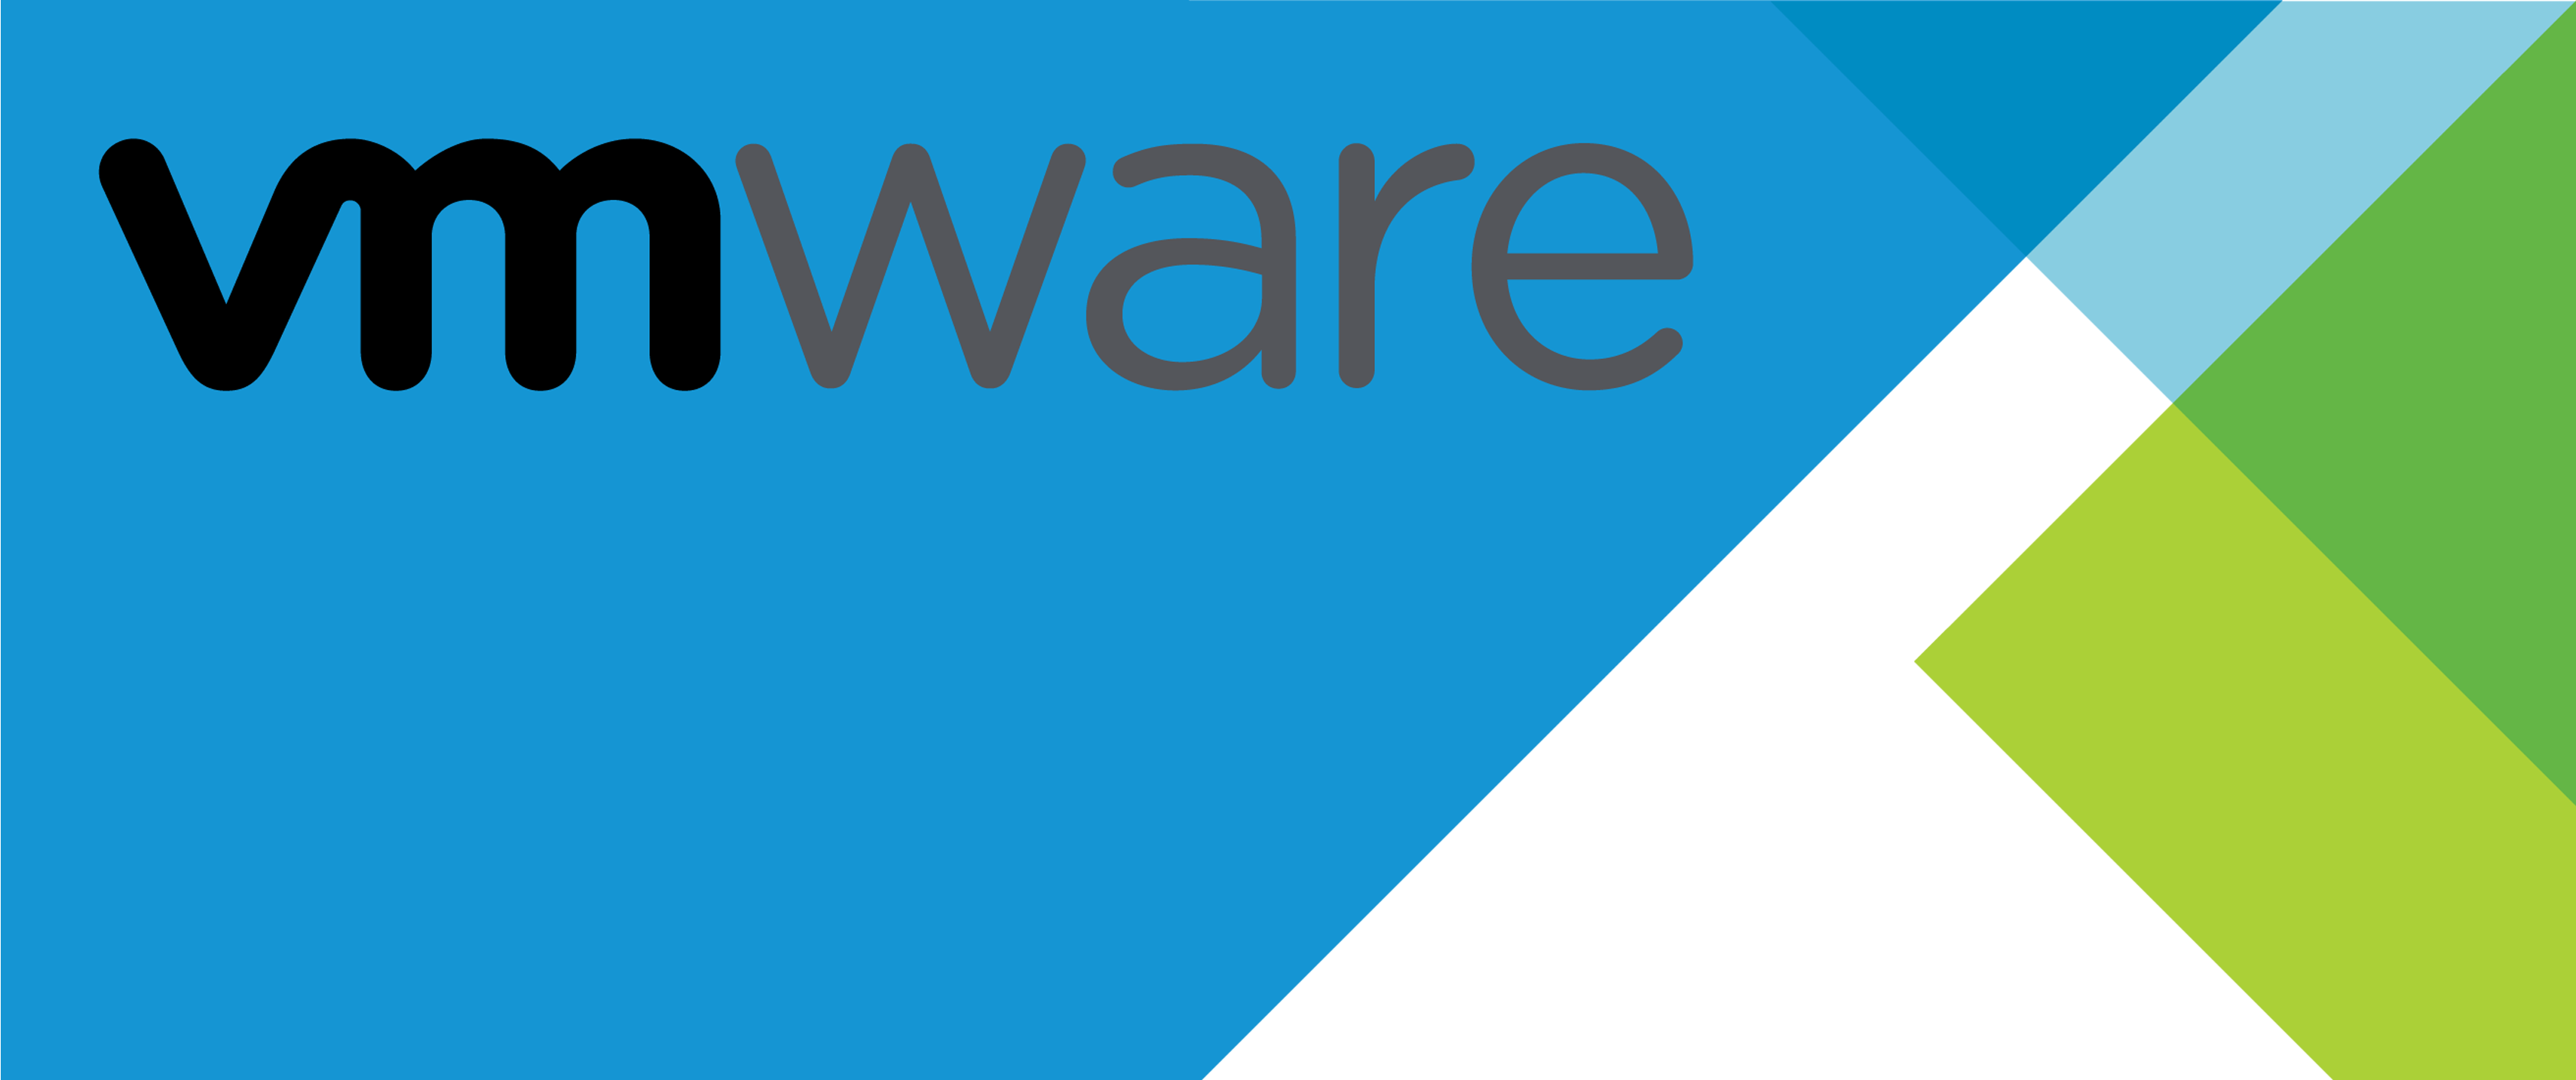 VMware tem receita de US$ 12,85 bilhões para o ano fiscal de 2022